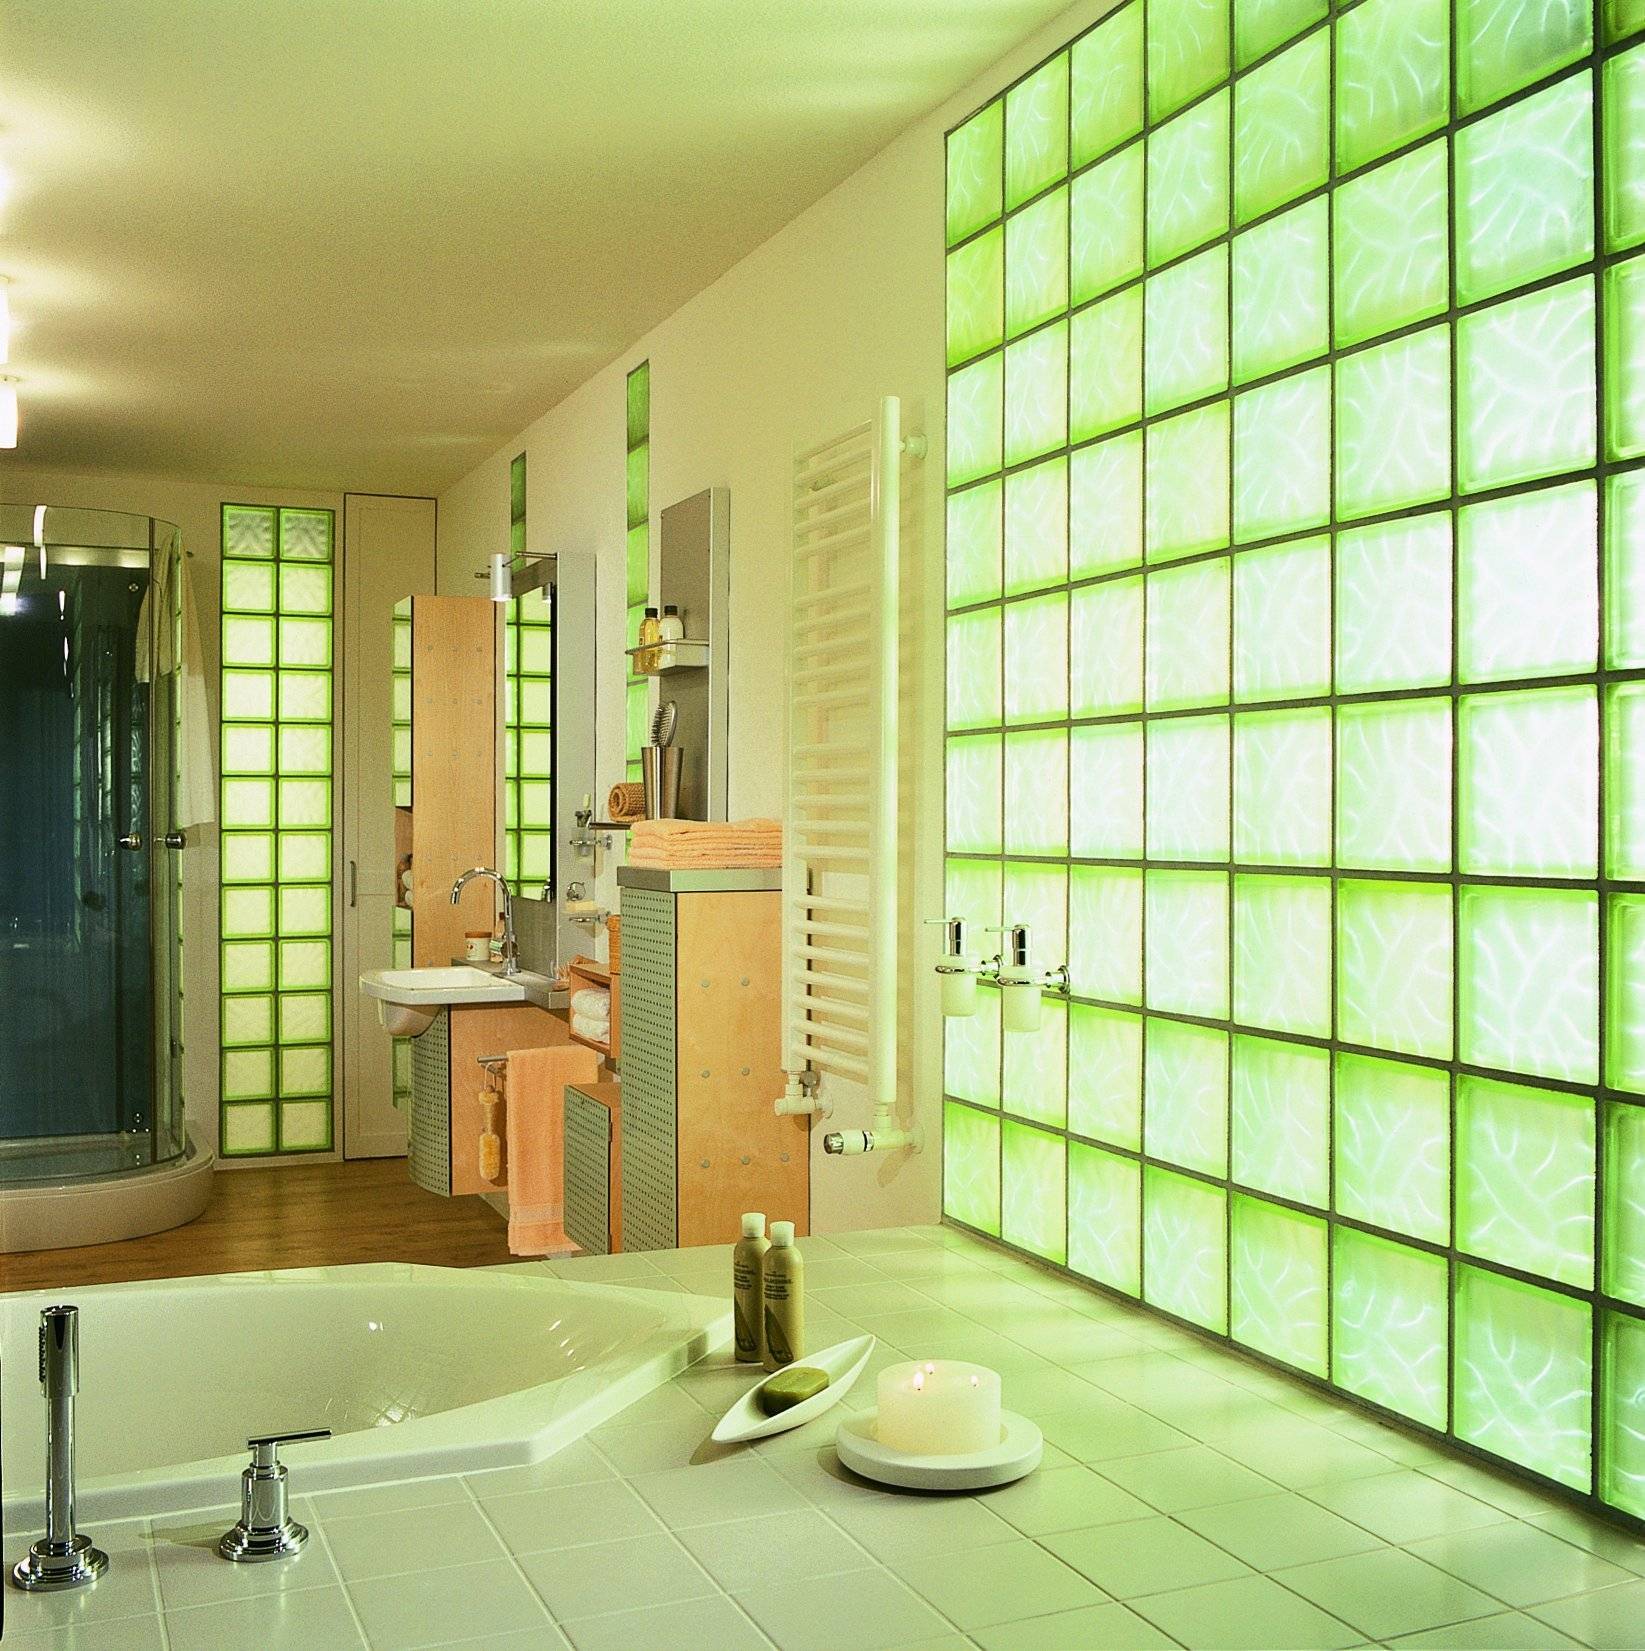 Размер стеклоблоков [47 фото], вес и диагональ, стеклянные блоки в интерьере квартиры и ванной комнаты.